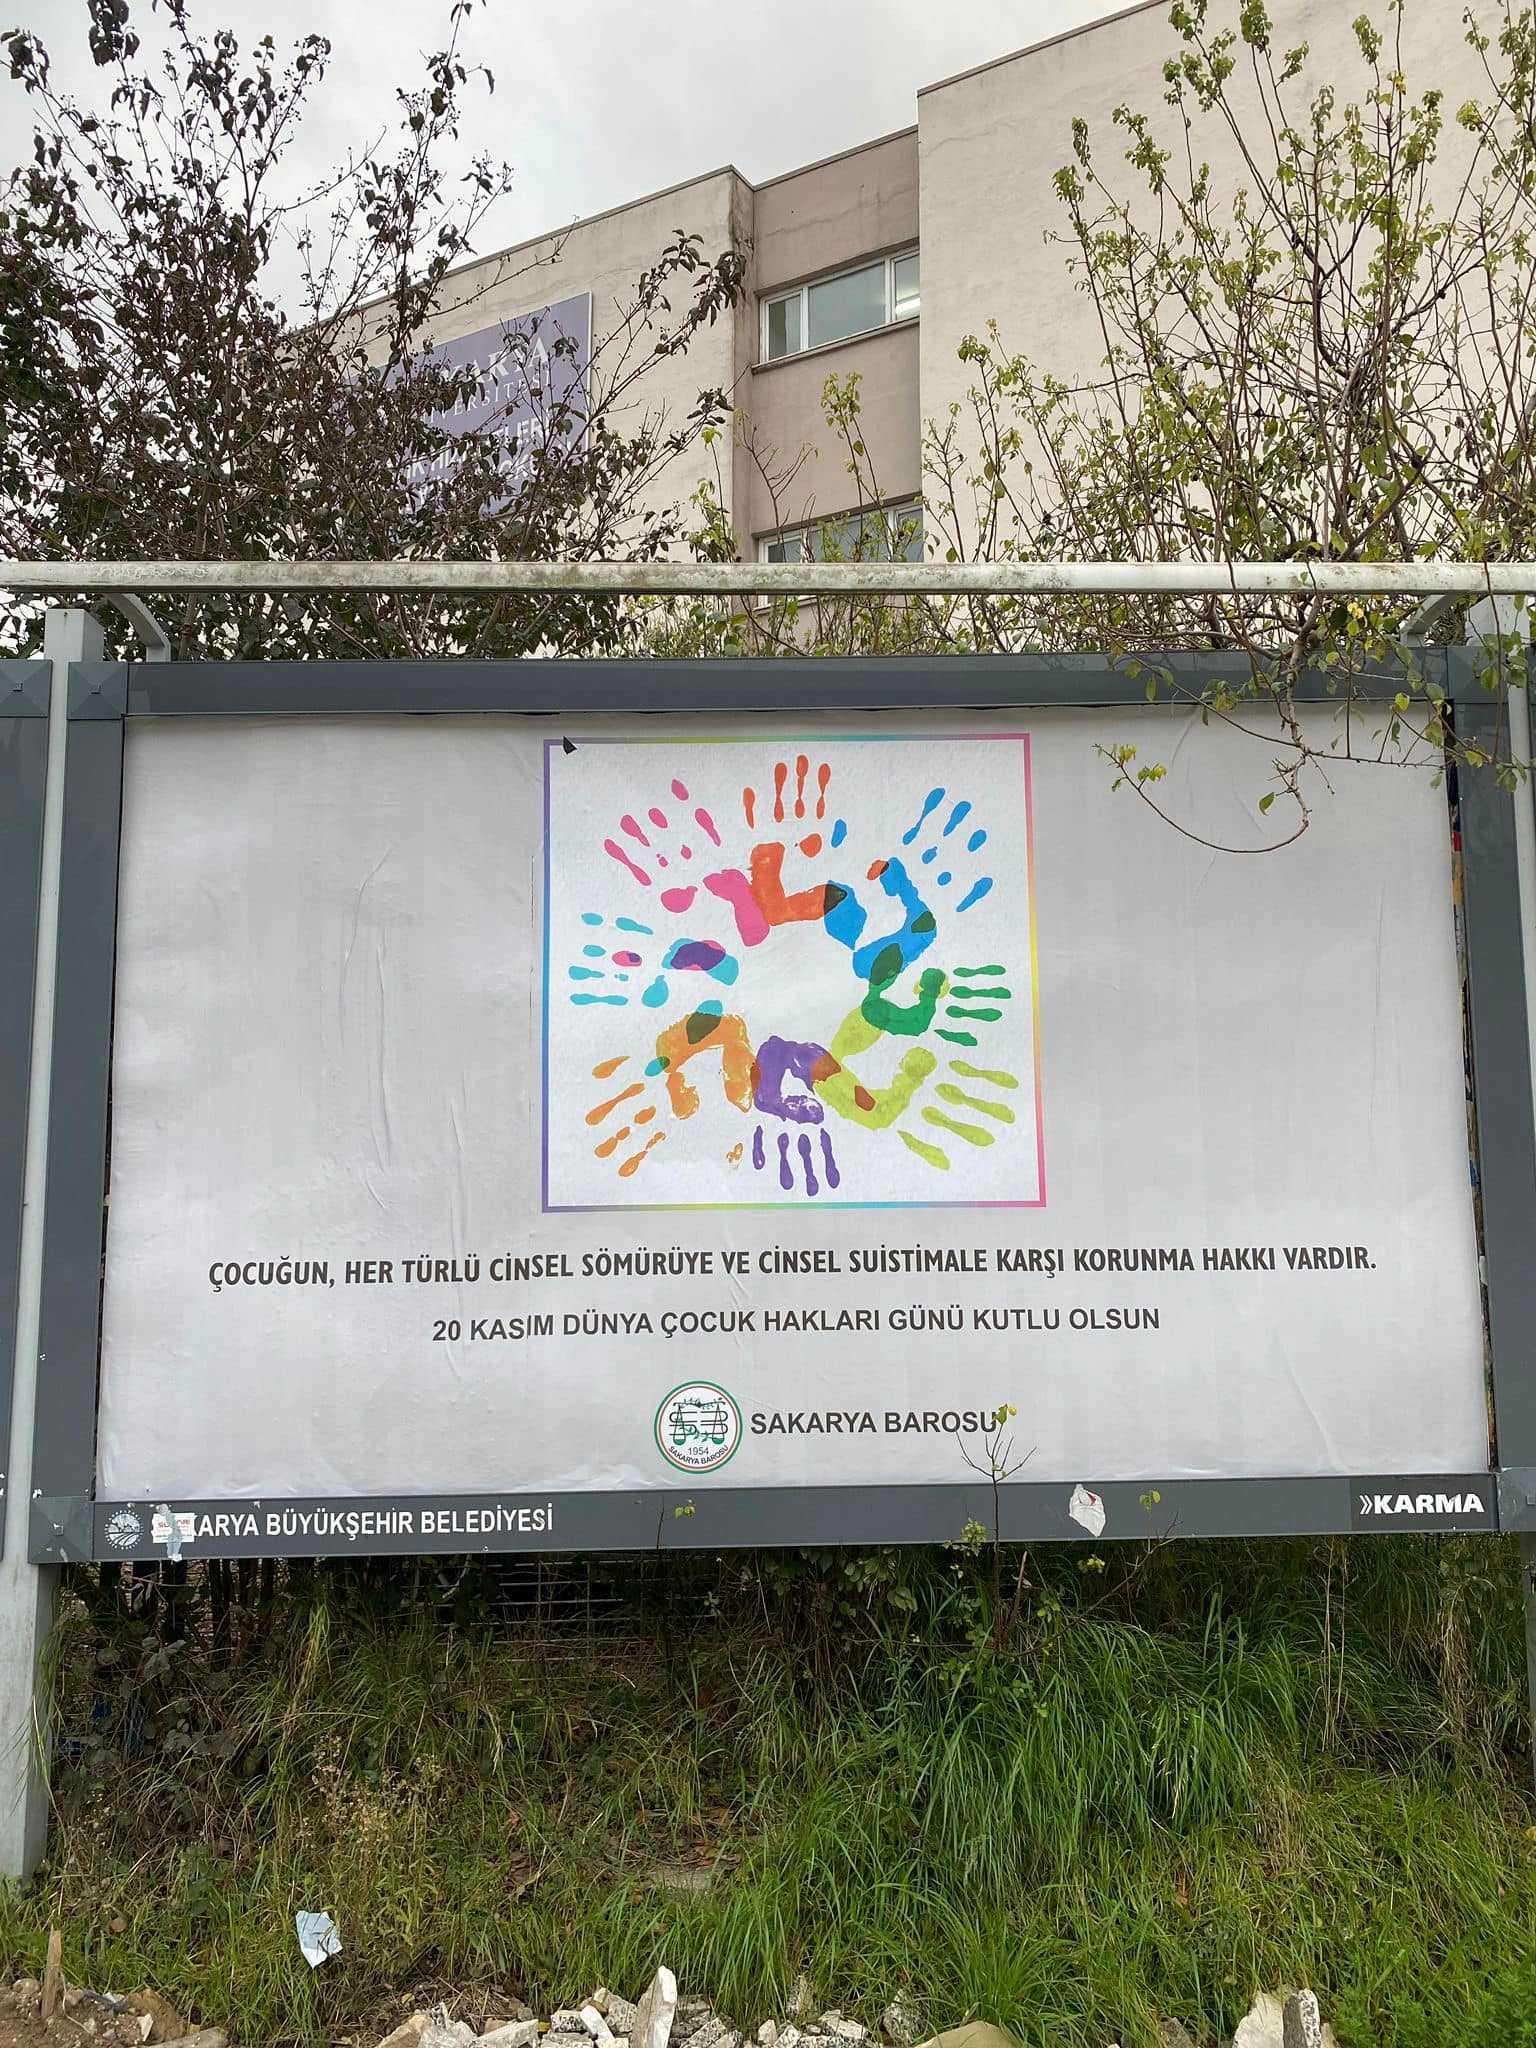 Sakarya Barosu’ndan billboardlar ile çocuk hakları farkındalığı